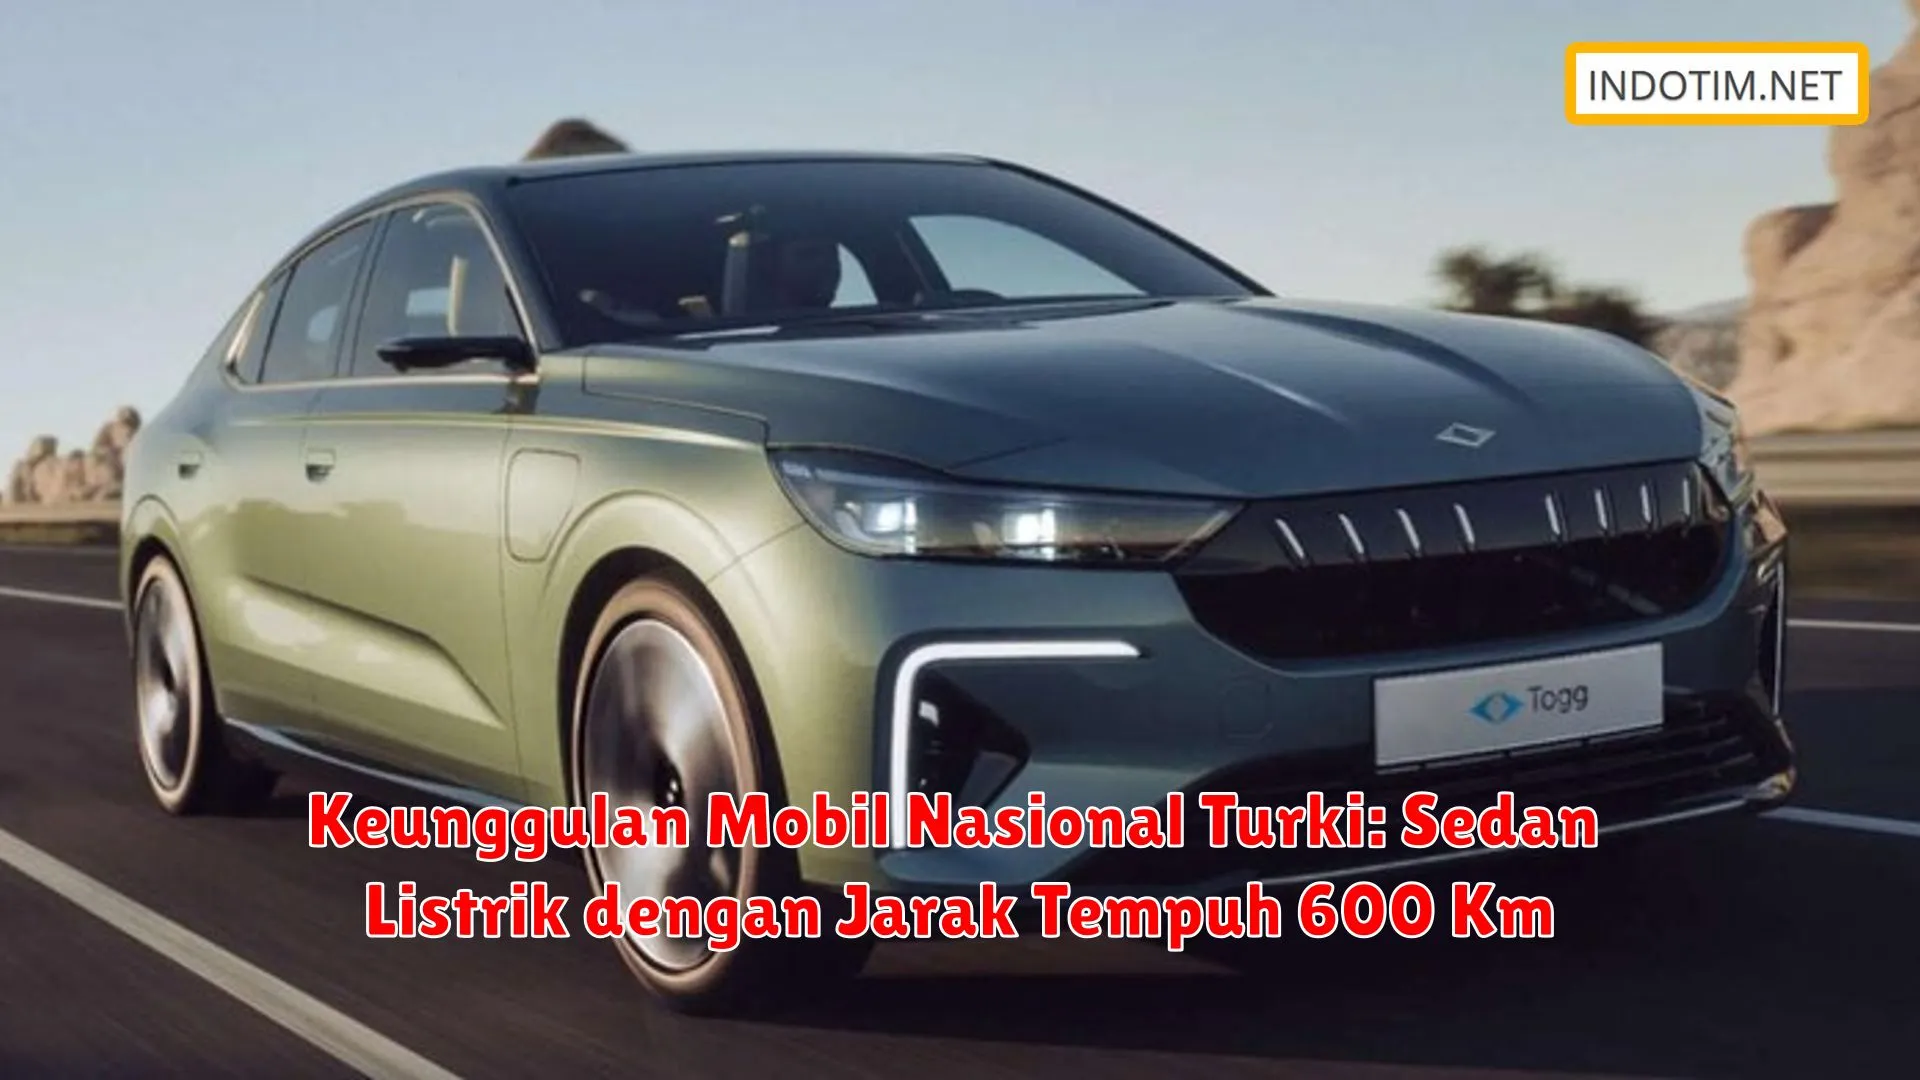 Keunggulan Mobil Nasional Turki: Sedan Listrik dengan Jarak Tempuh 600 Km